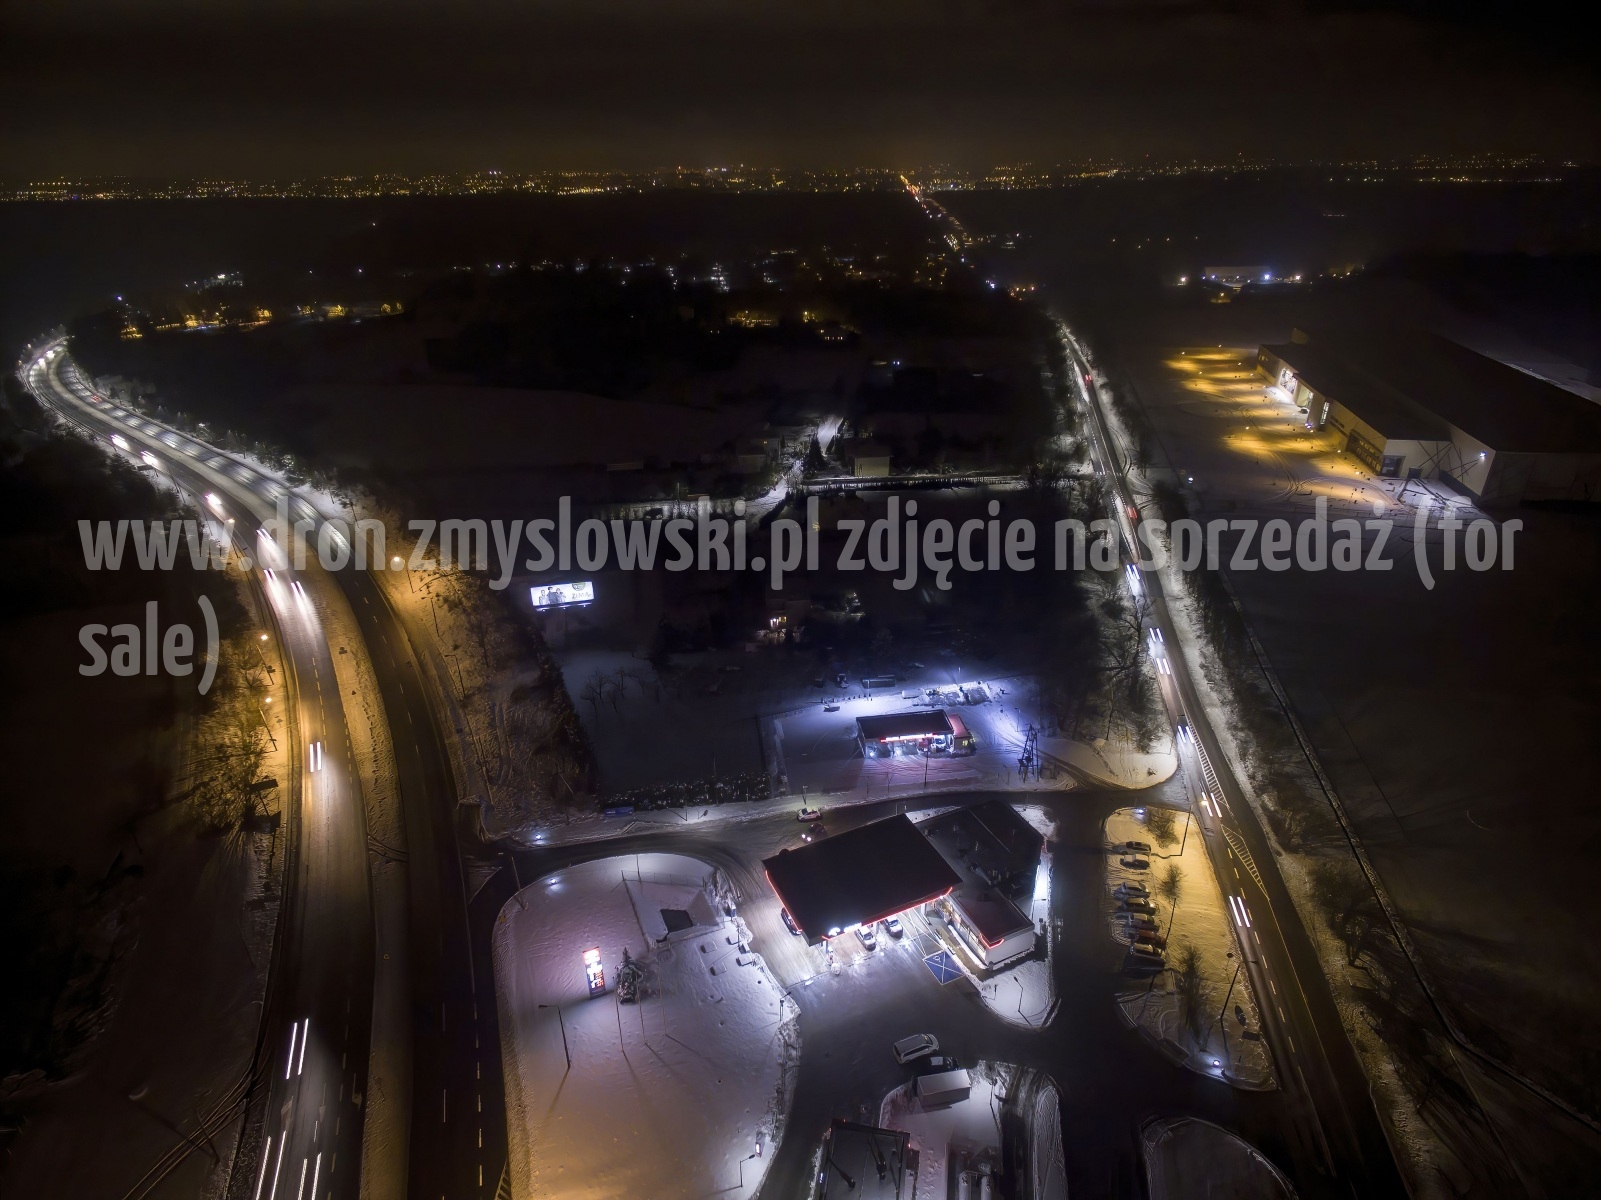 2018-01-17-nocny-lot-dronem-w-Bydgoszczy-na-ul.-Armii-Krajowej-041-DeNoiseAI-standard-SharpenAI-Motion